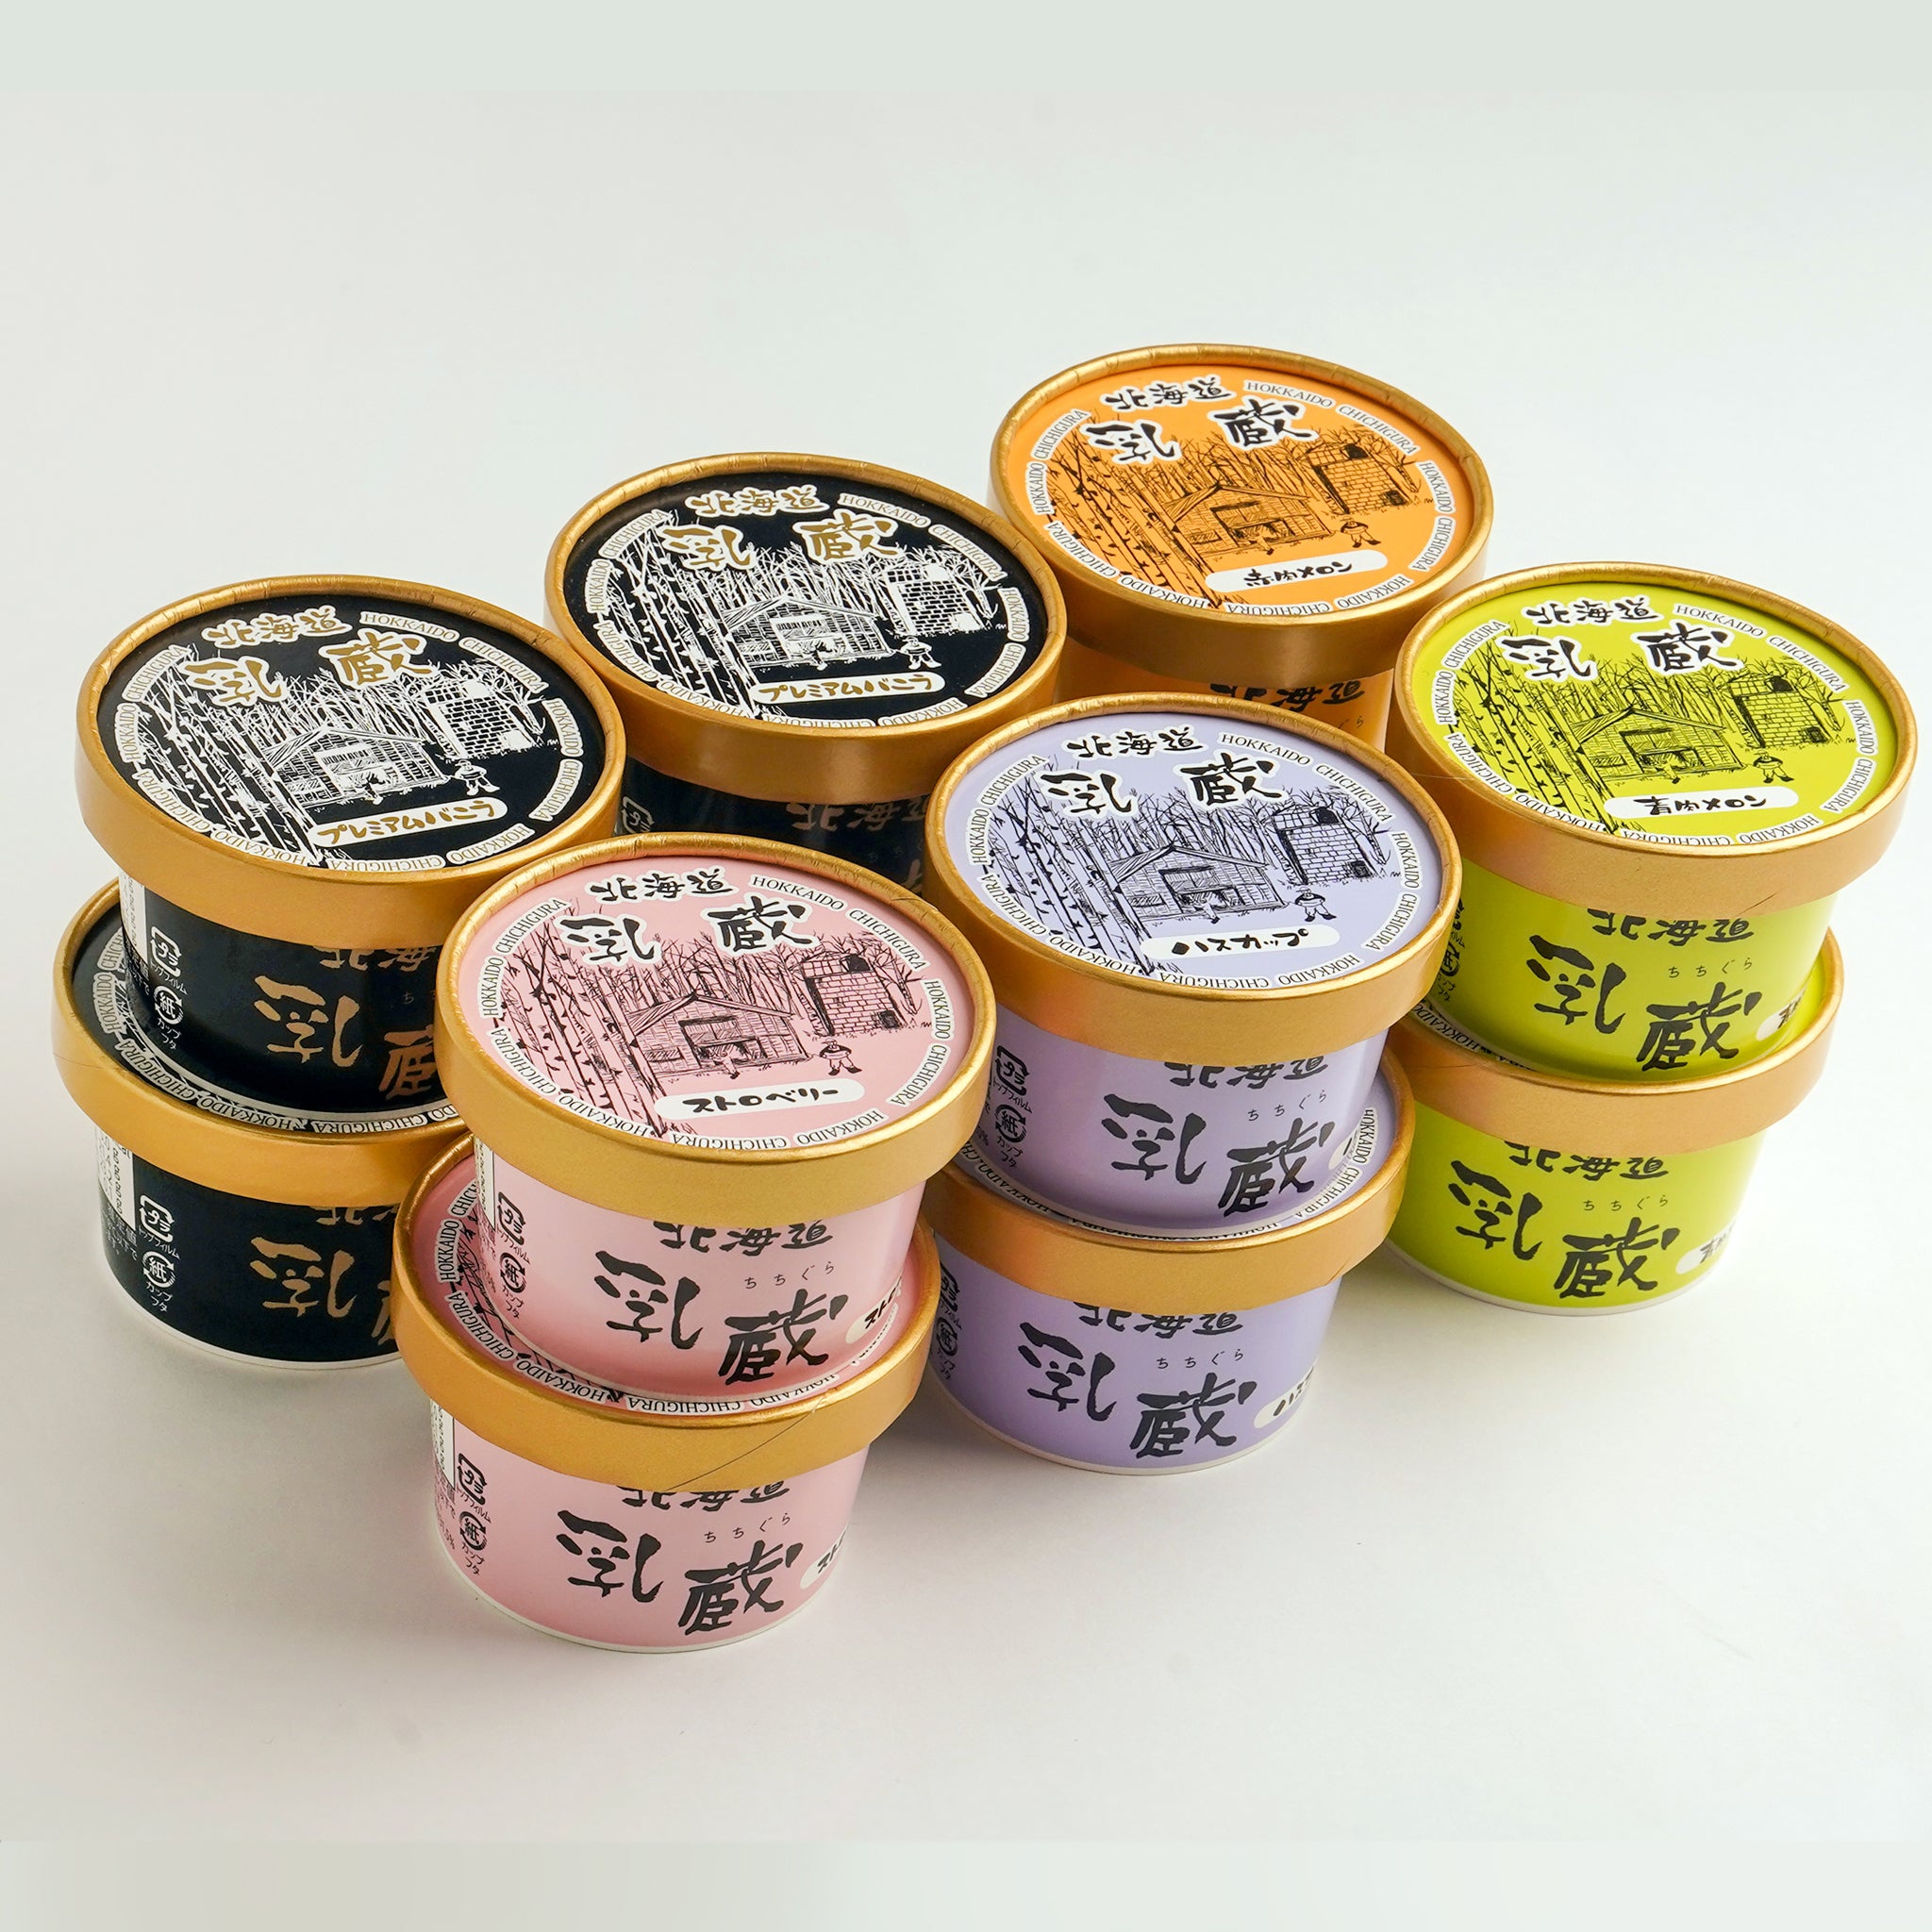 〈産直〉乳蔵 北海道アイスクリーム 5種 12個【冷凍】